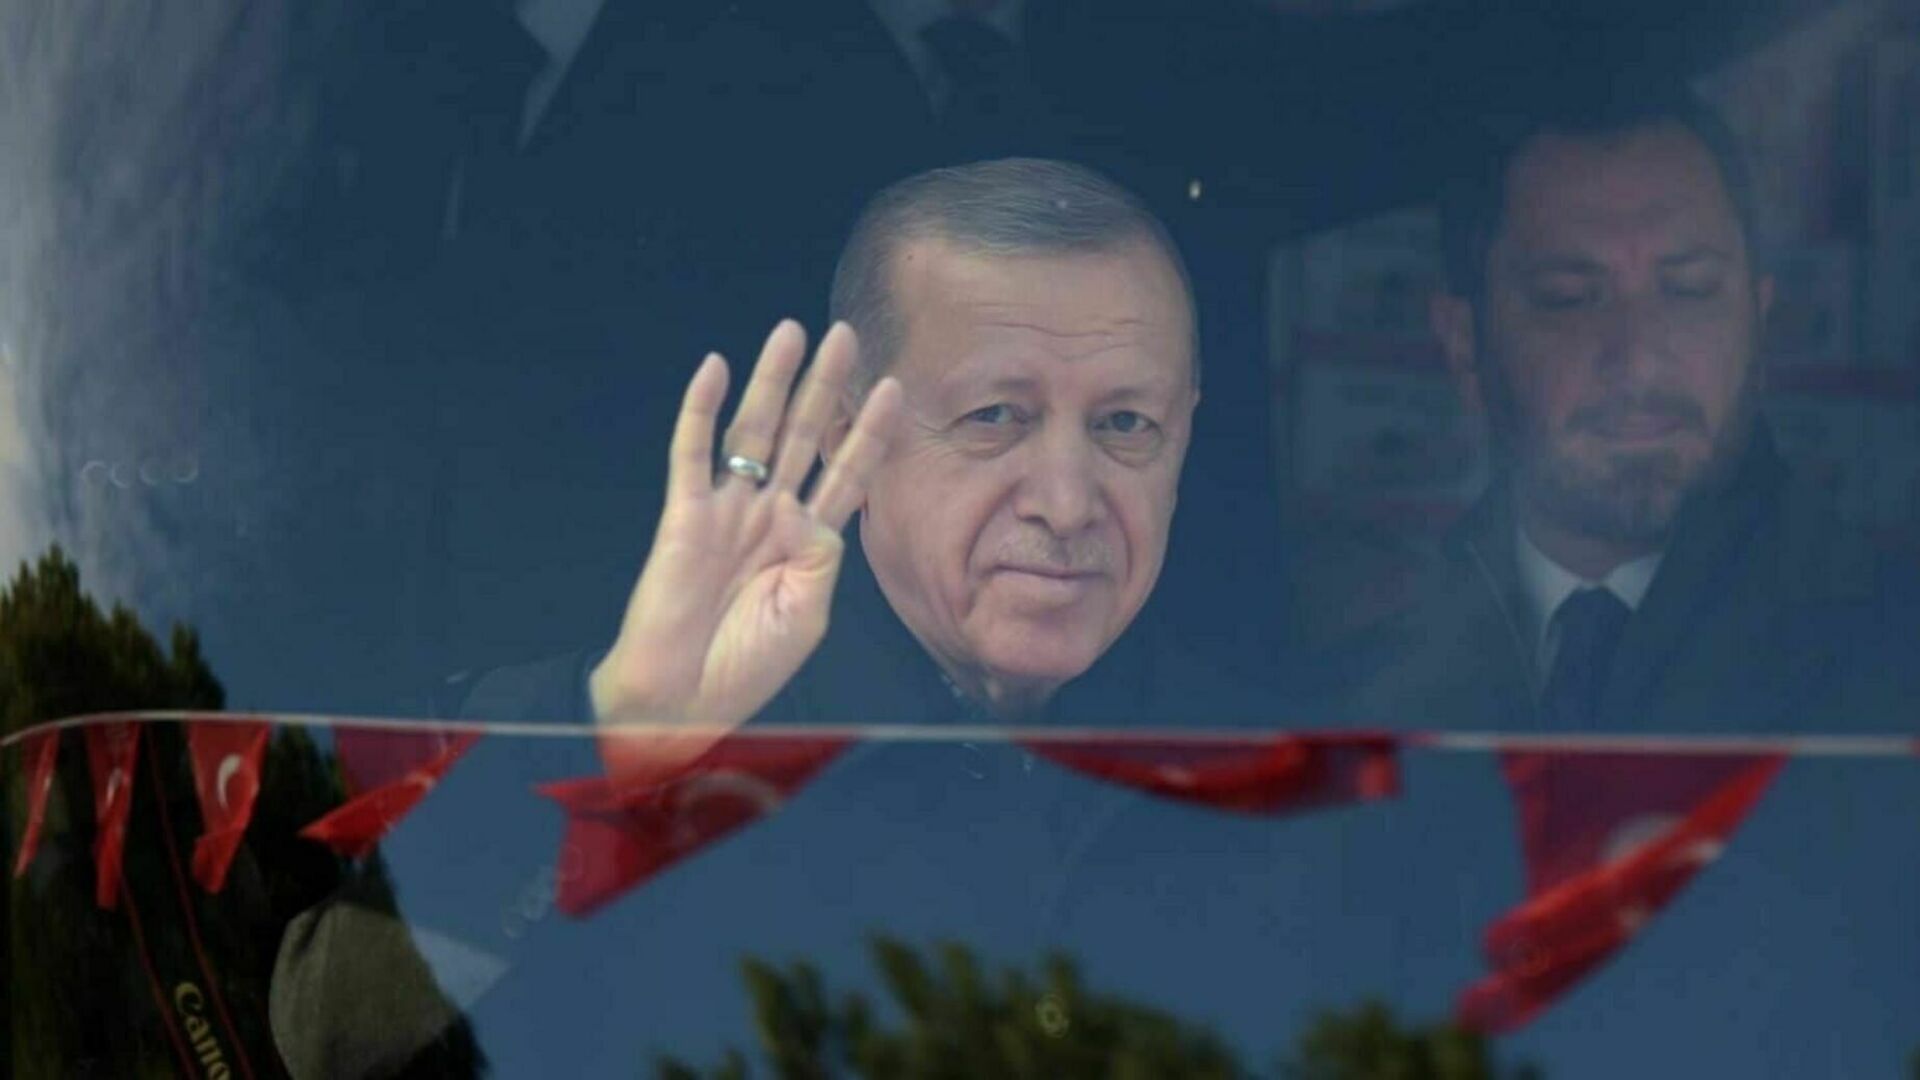 Реджепа Эрдогана выдвинули в качестве кандидата на предстоящие выборы президента